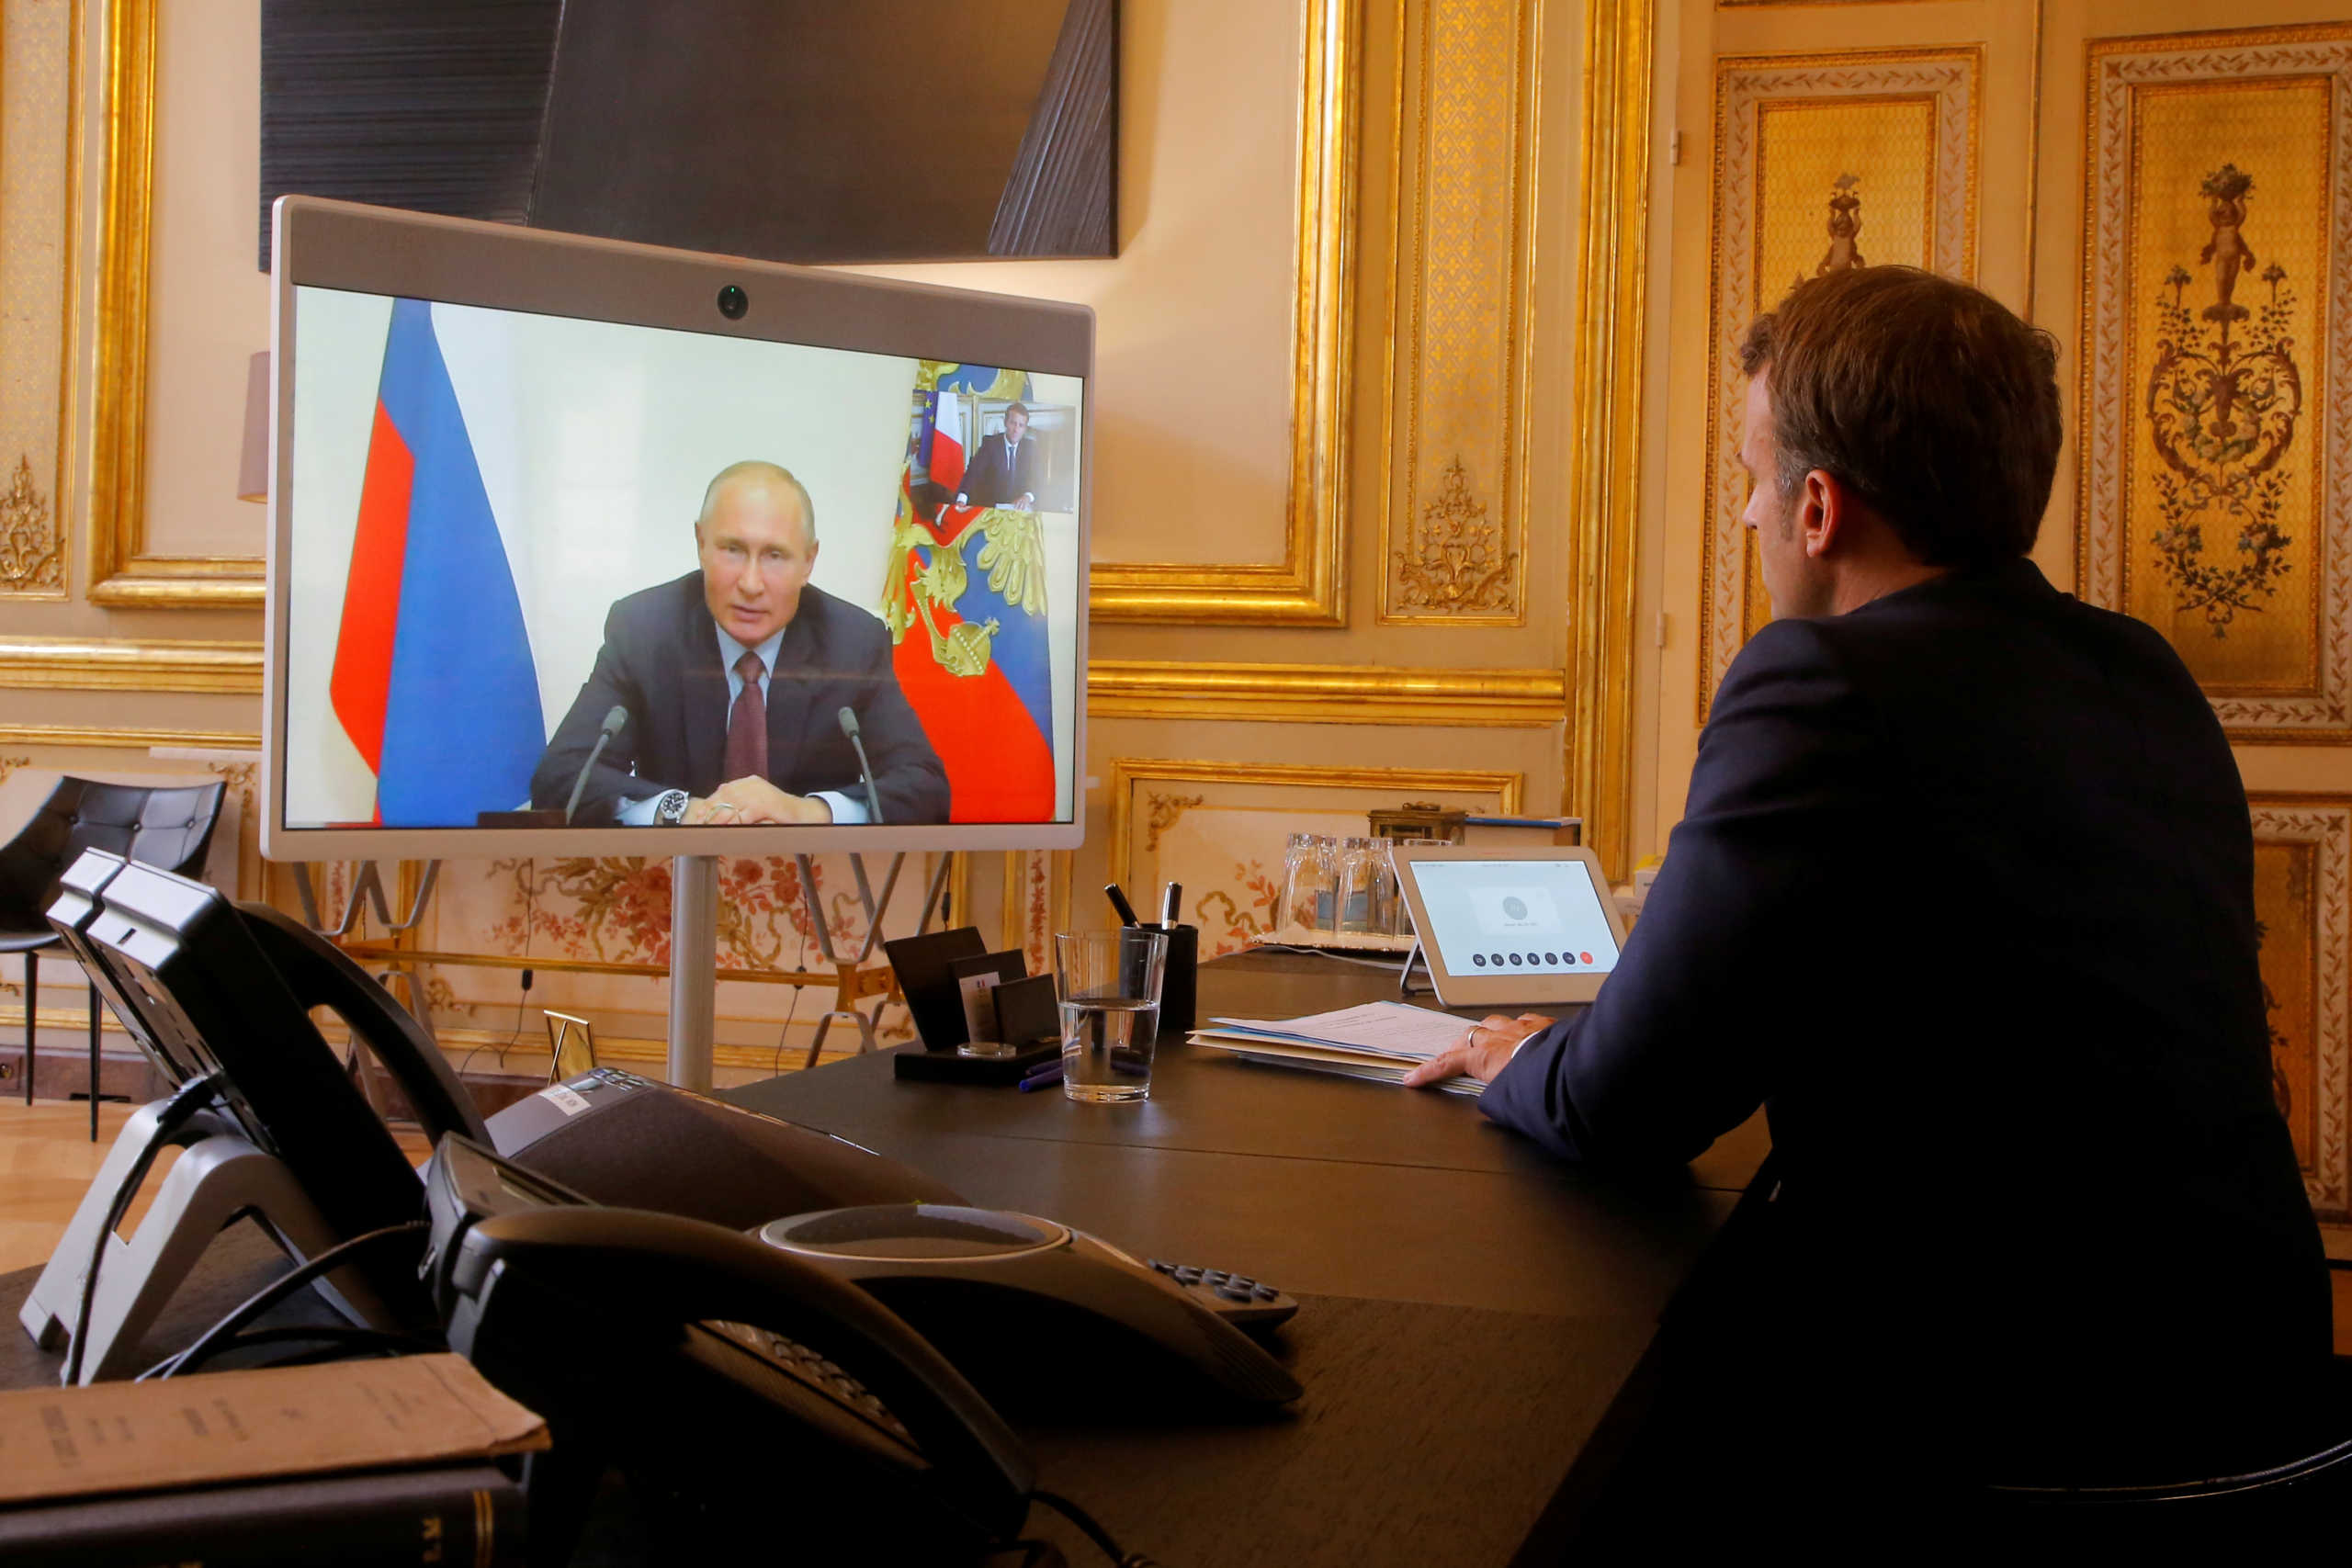 Πούτιν σε Μακρόν για υπόθεση Ναβάλνι: “Απαράδεκτες οι κατηγορίες”